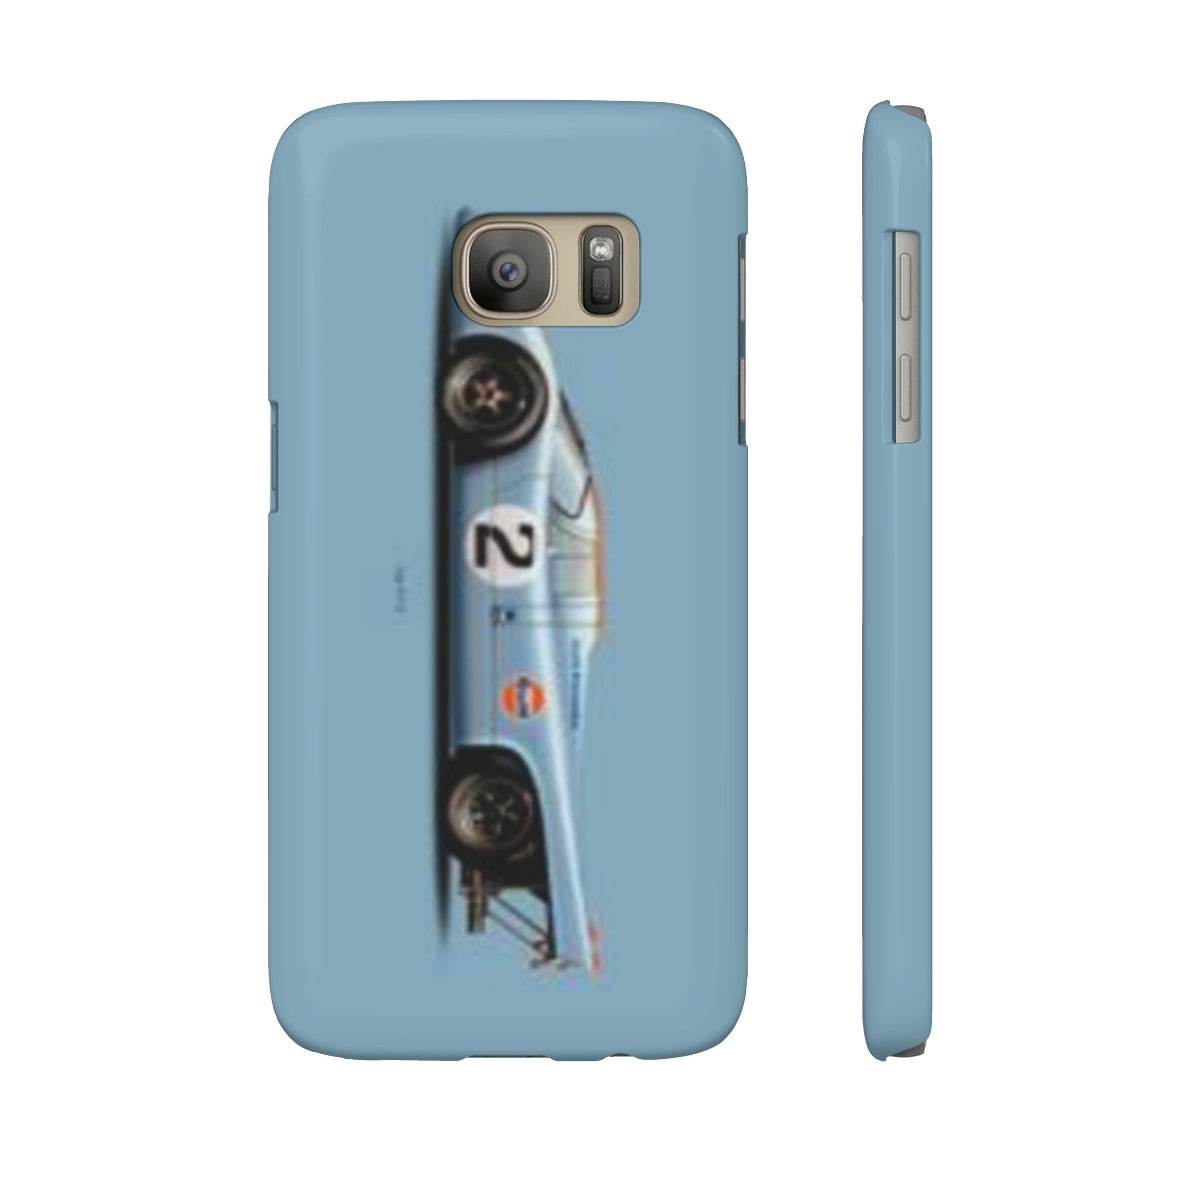 917 Case Mate Slim Phone Cases